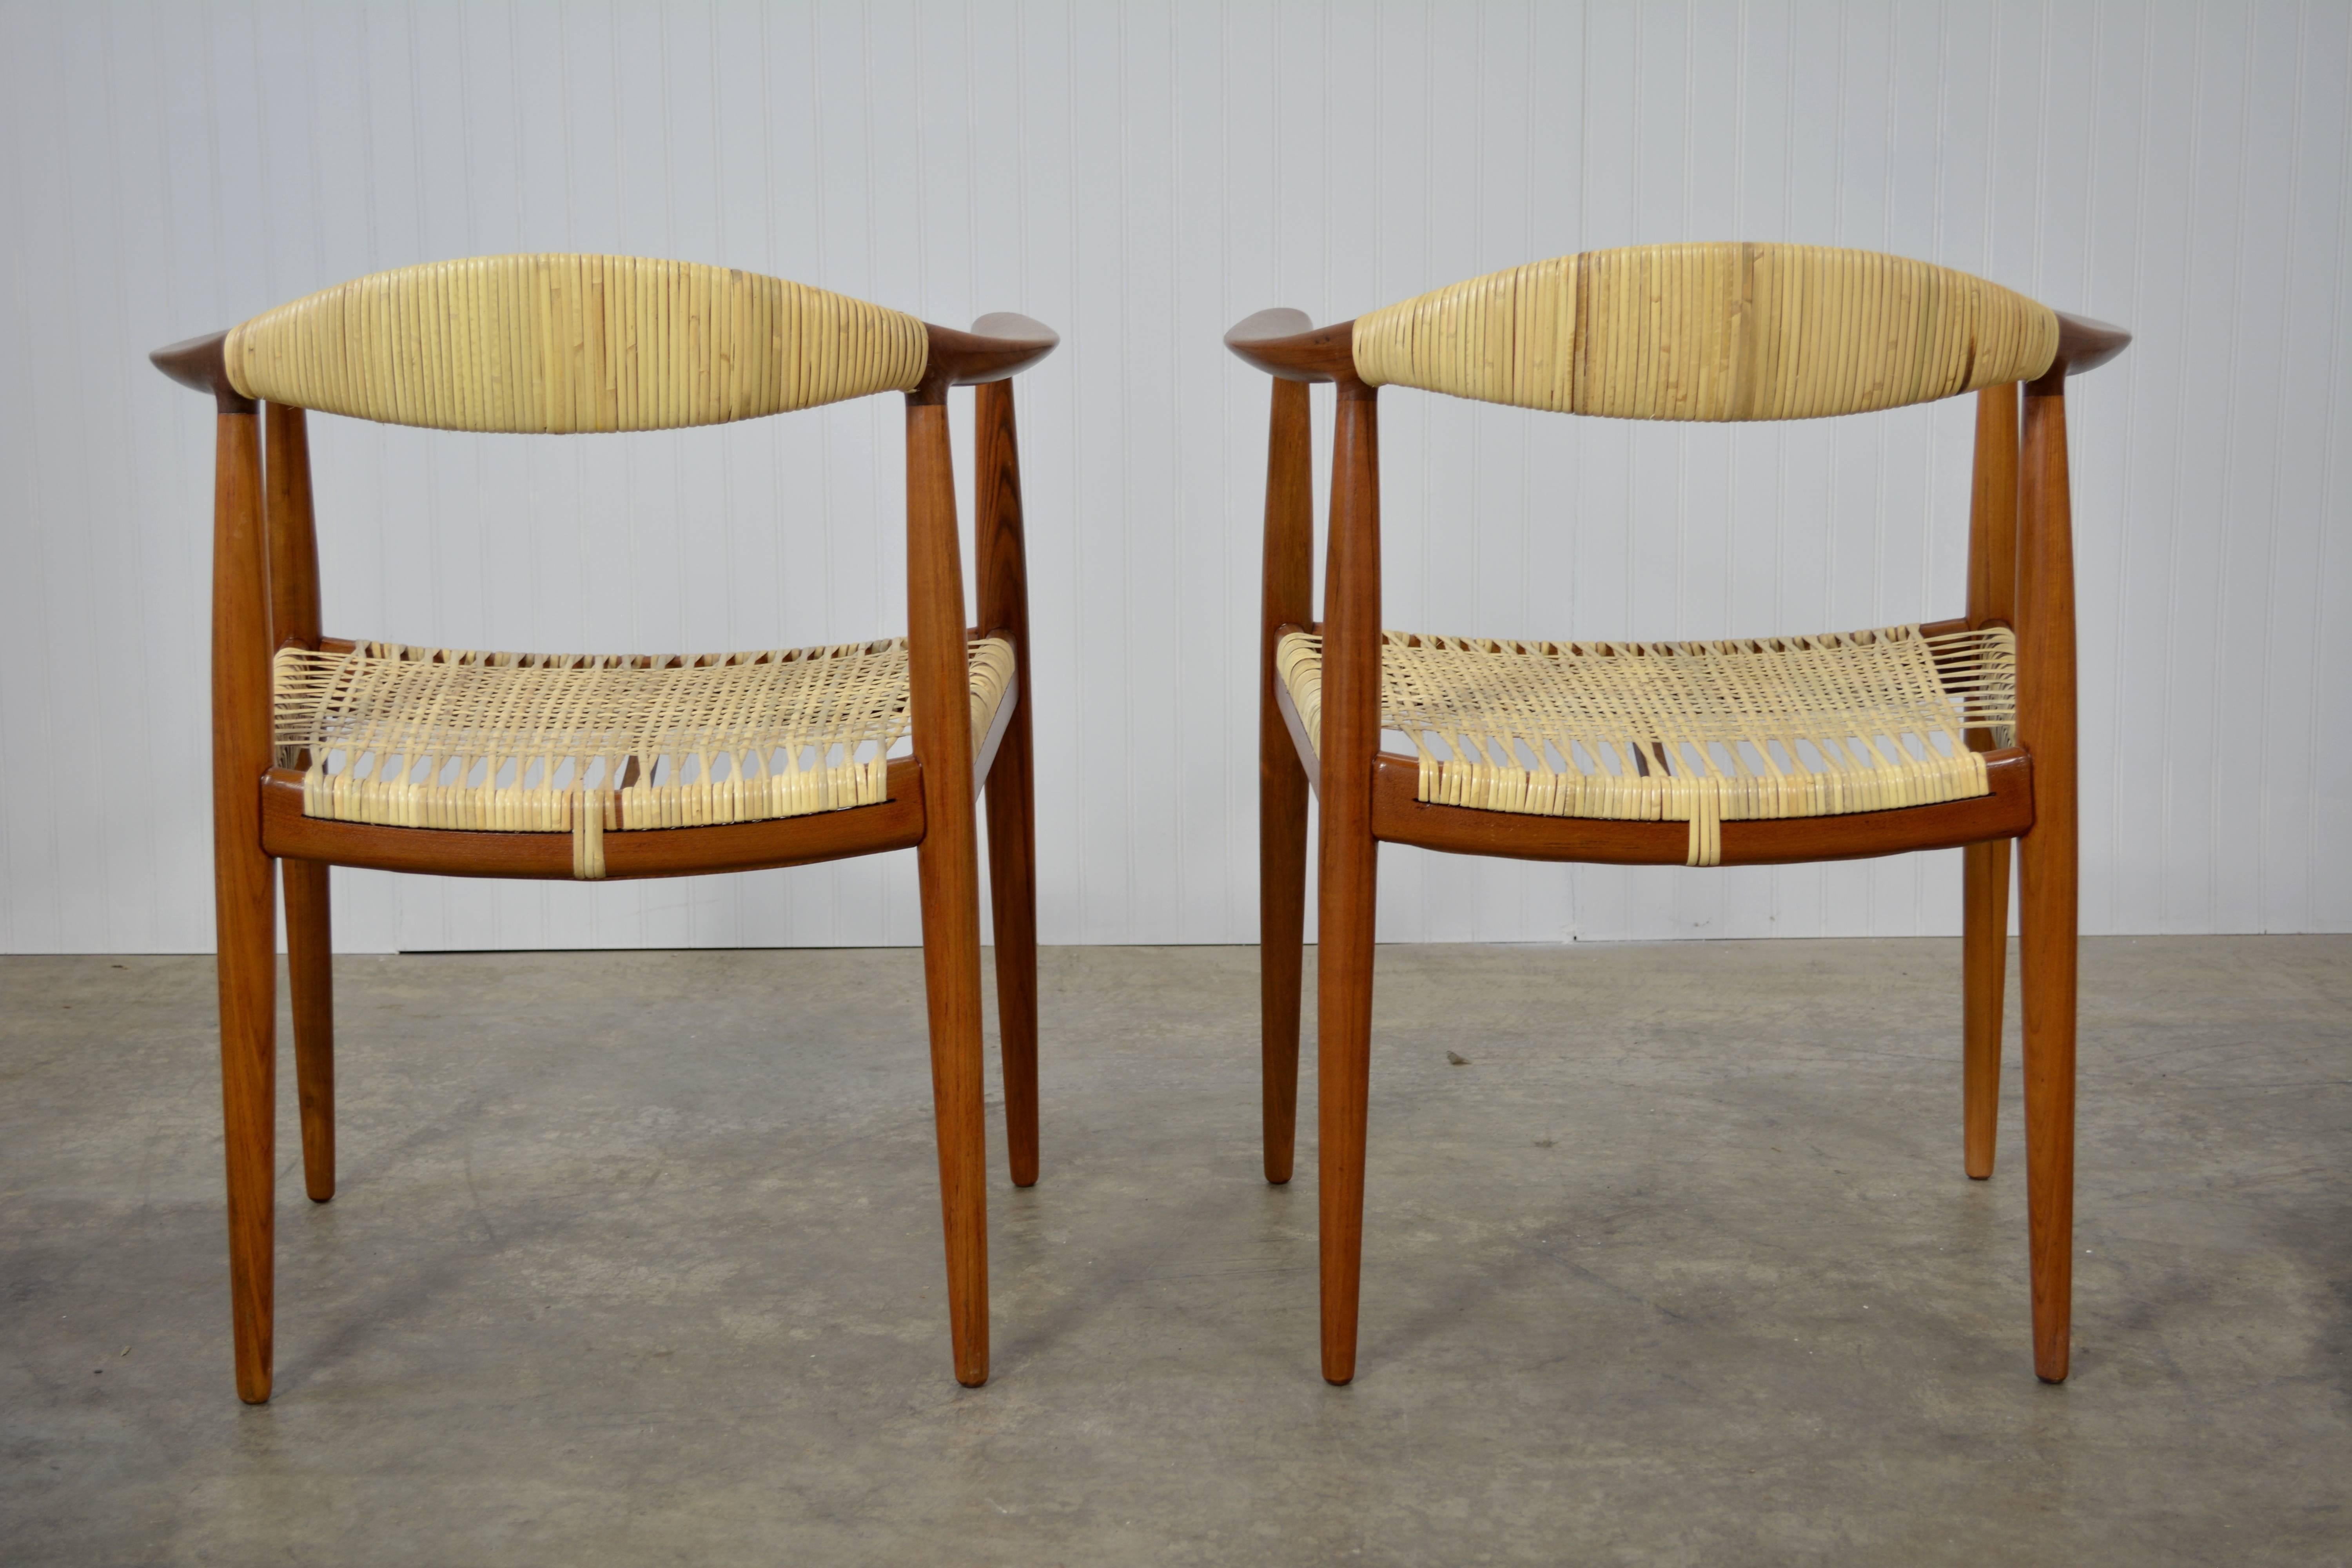 Danish Hans Wegner Round Chairs in Teak and Cane